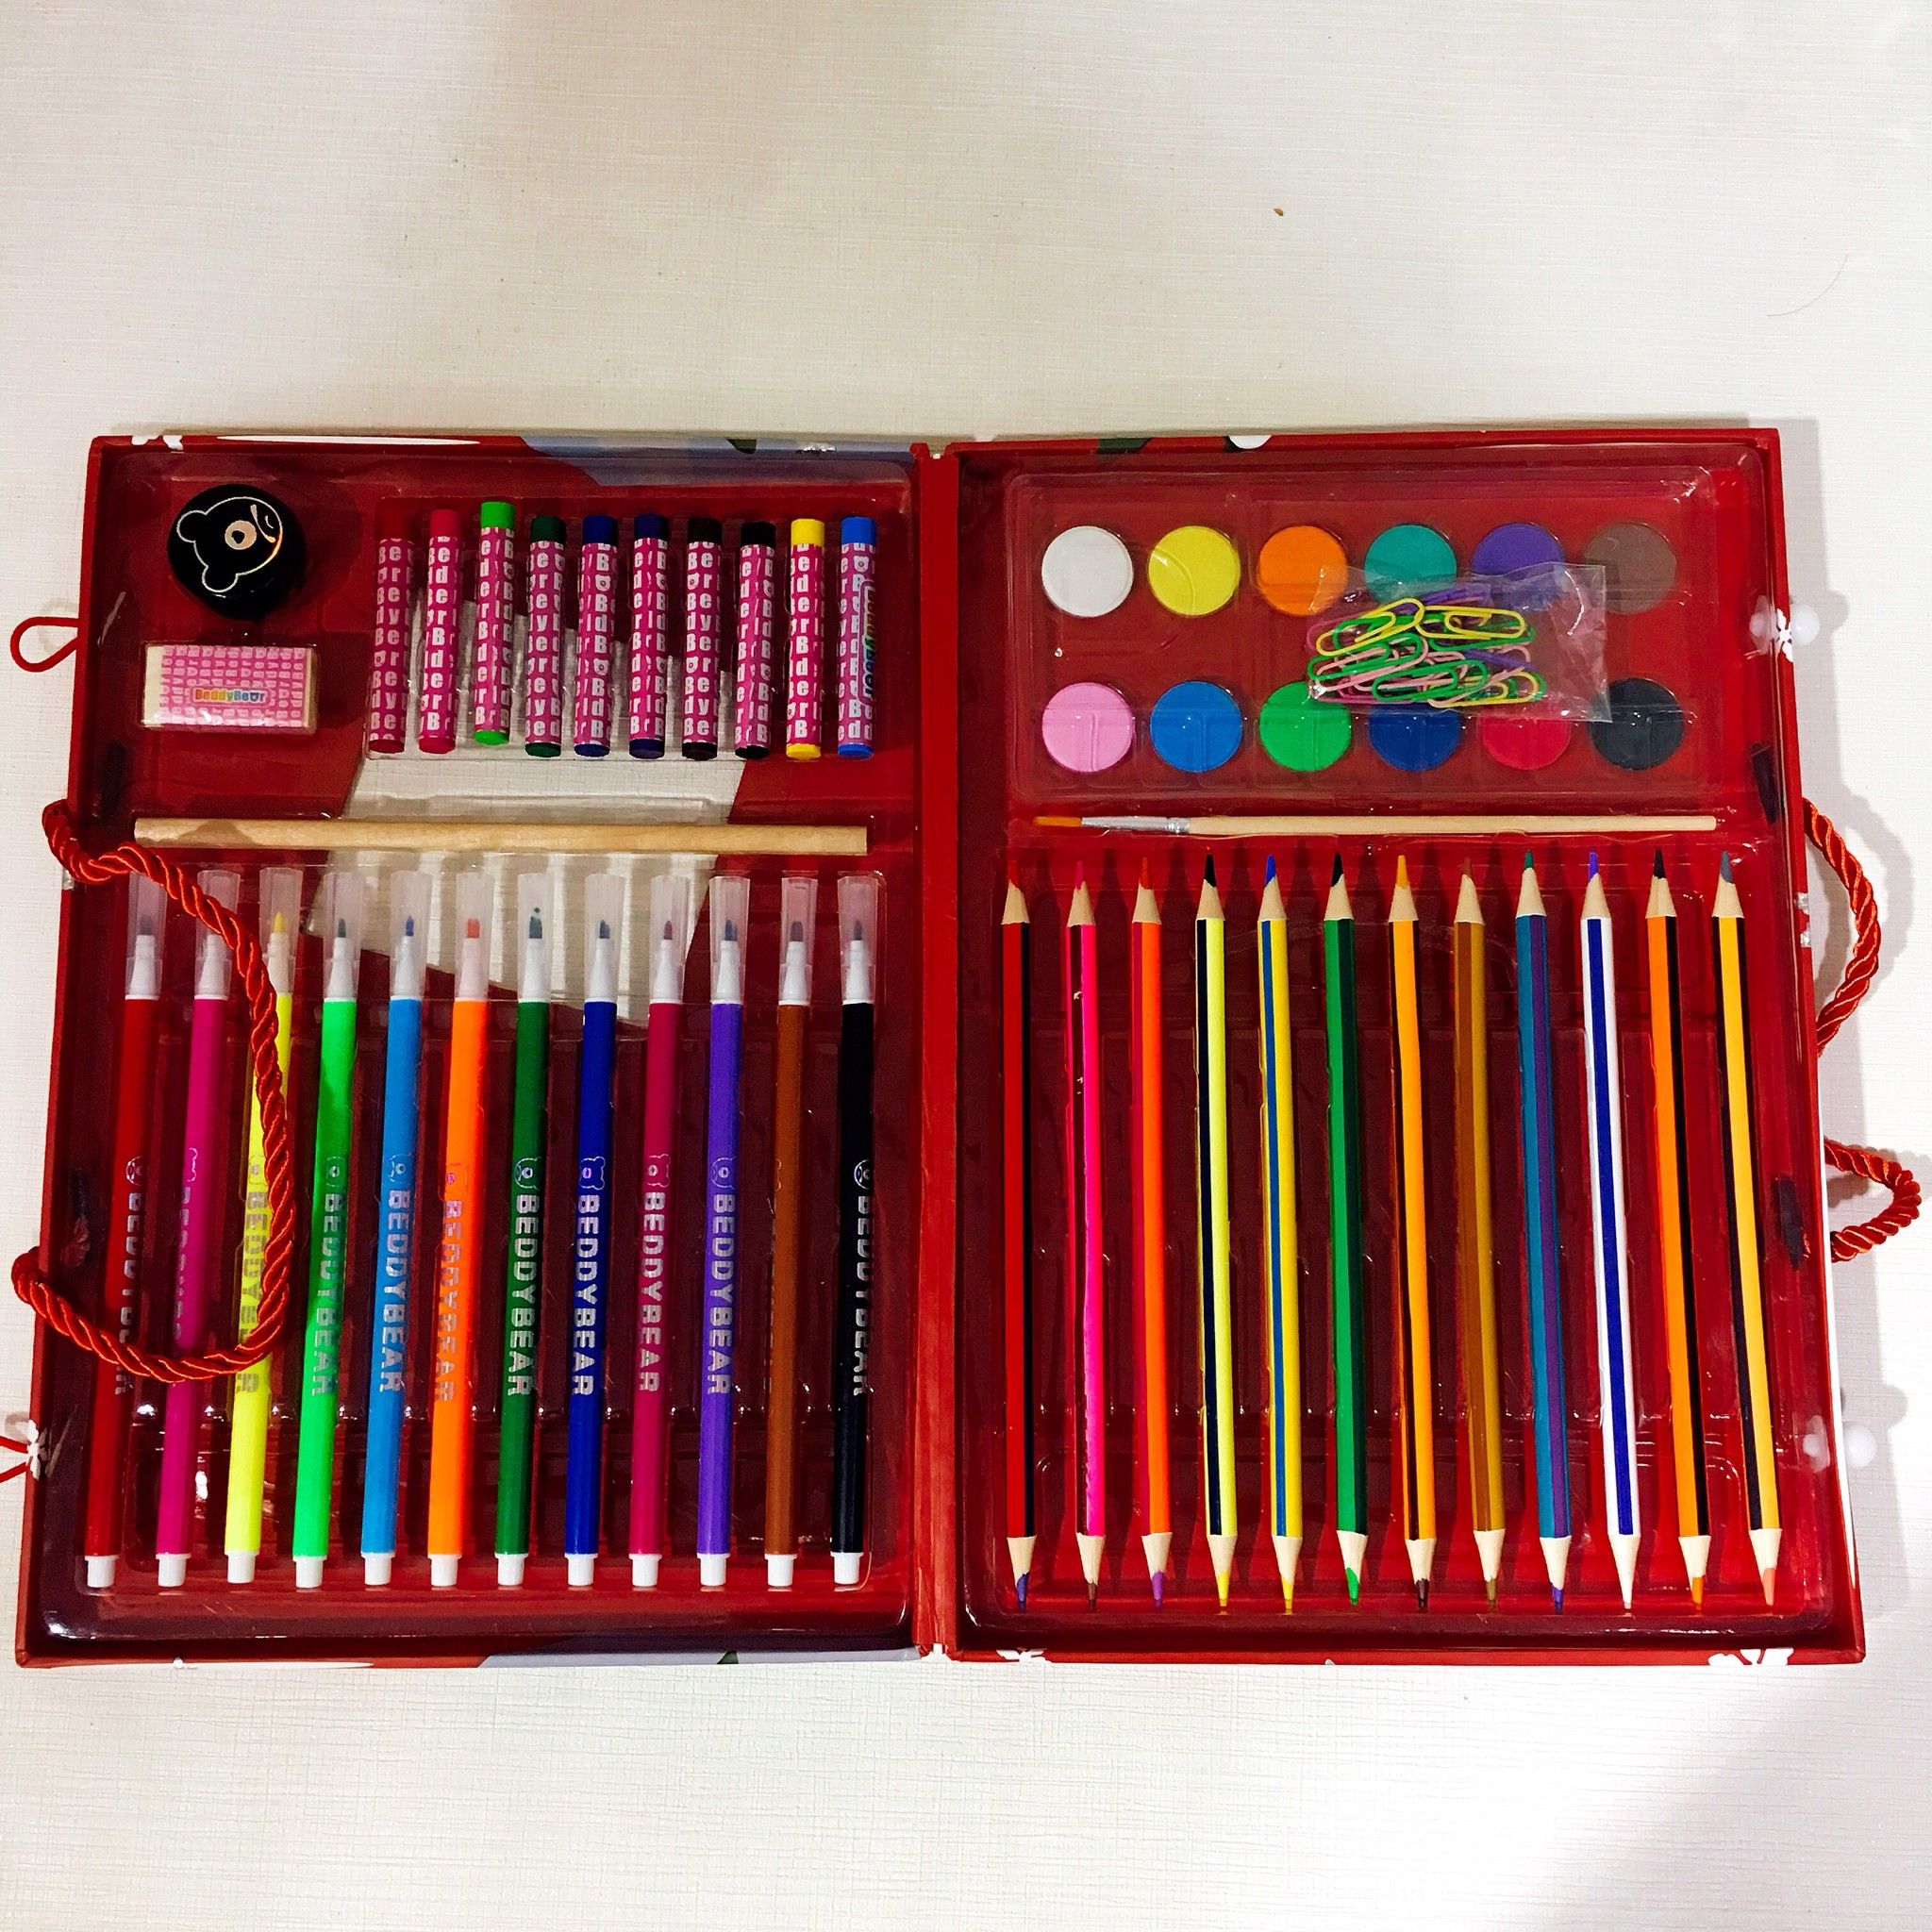  Bộ bút sáp - Bút chì màu - Bút màu nước Beddybear / Beddy Bear dành cho bé trai, bé gái từ 3 tuổi, mầm non, tiểu học / họa tiết Khủng long Q1806-KHUNGLONG 